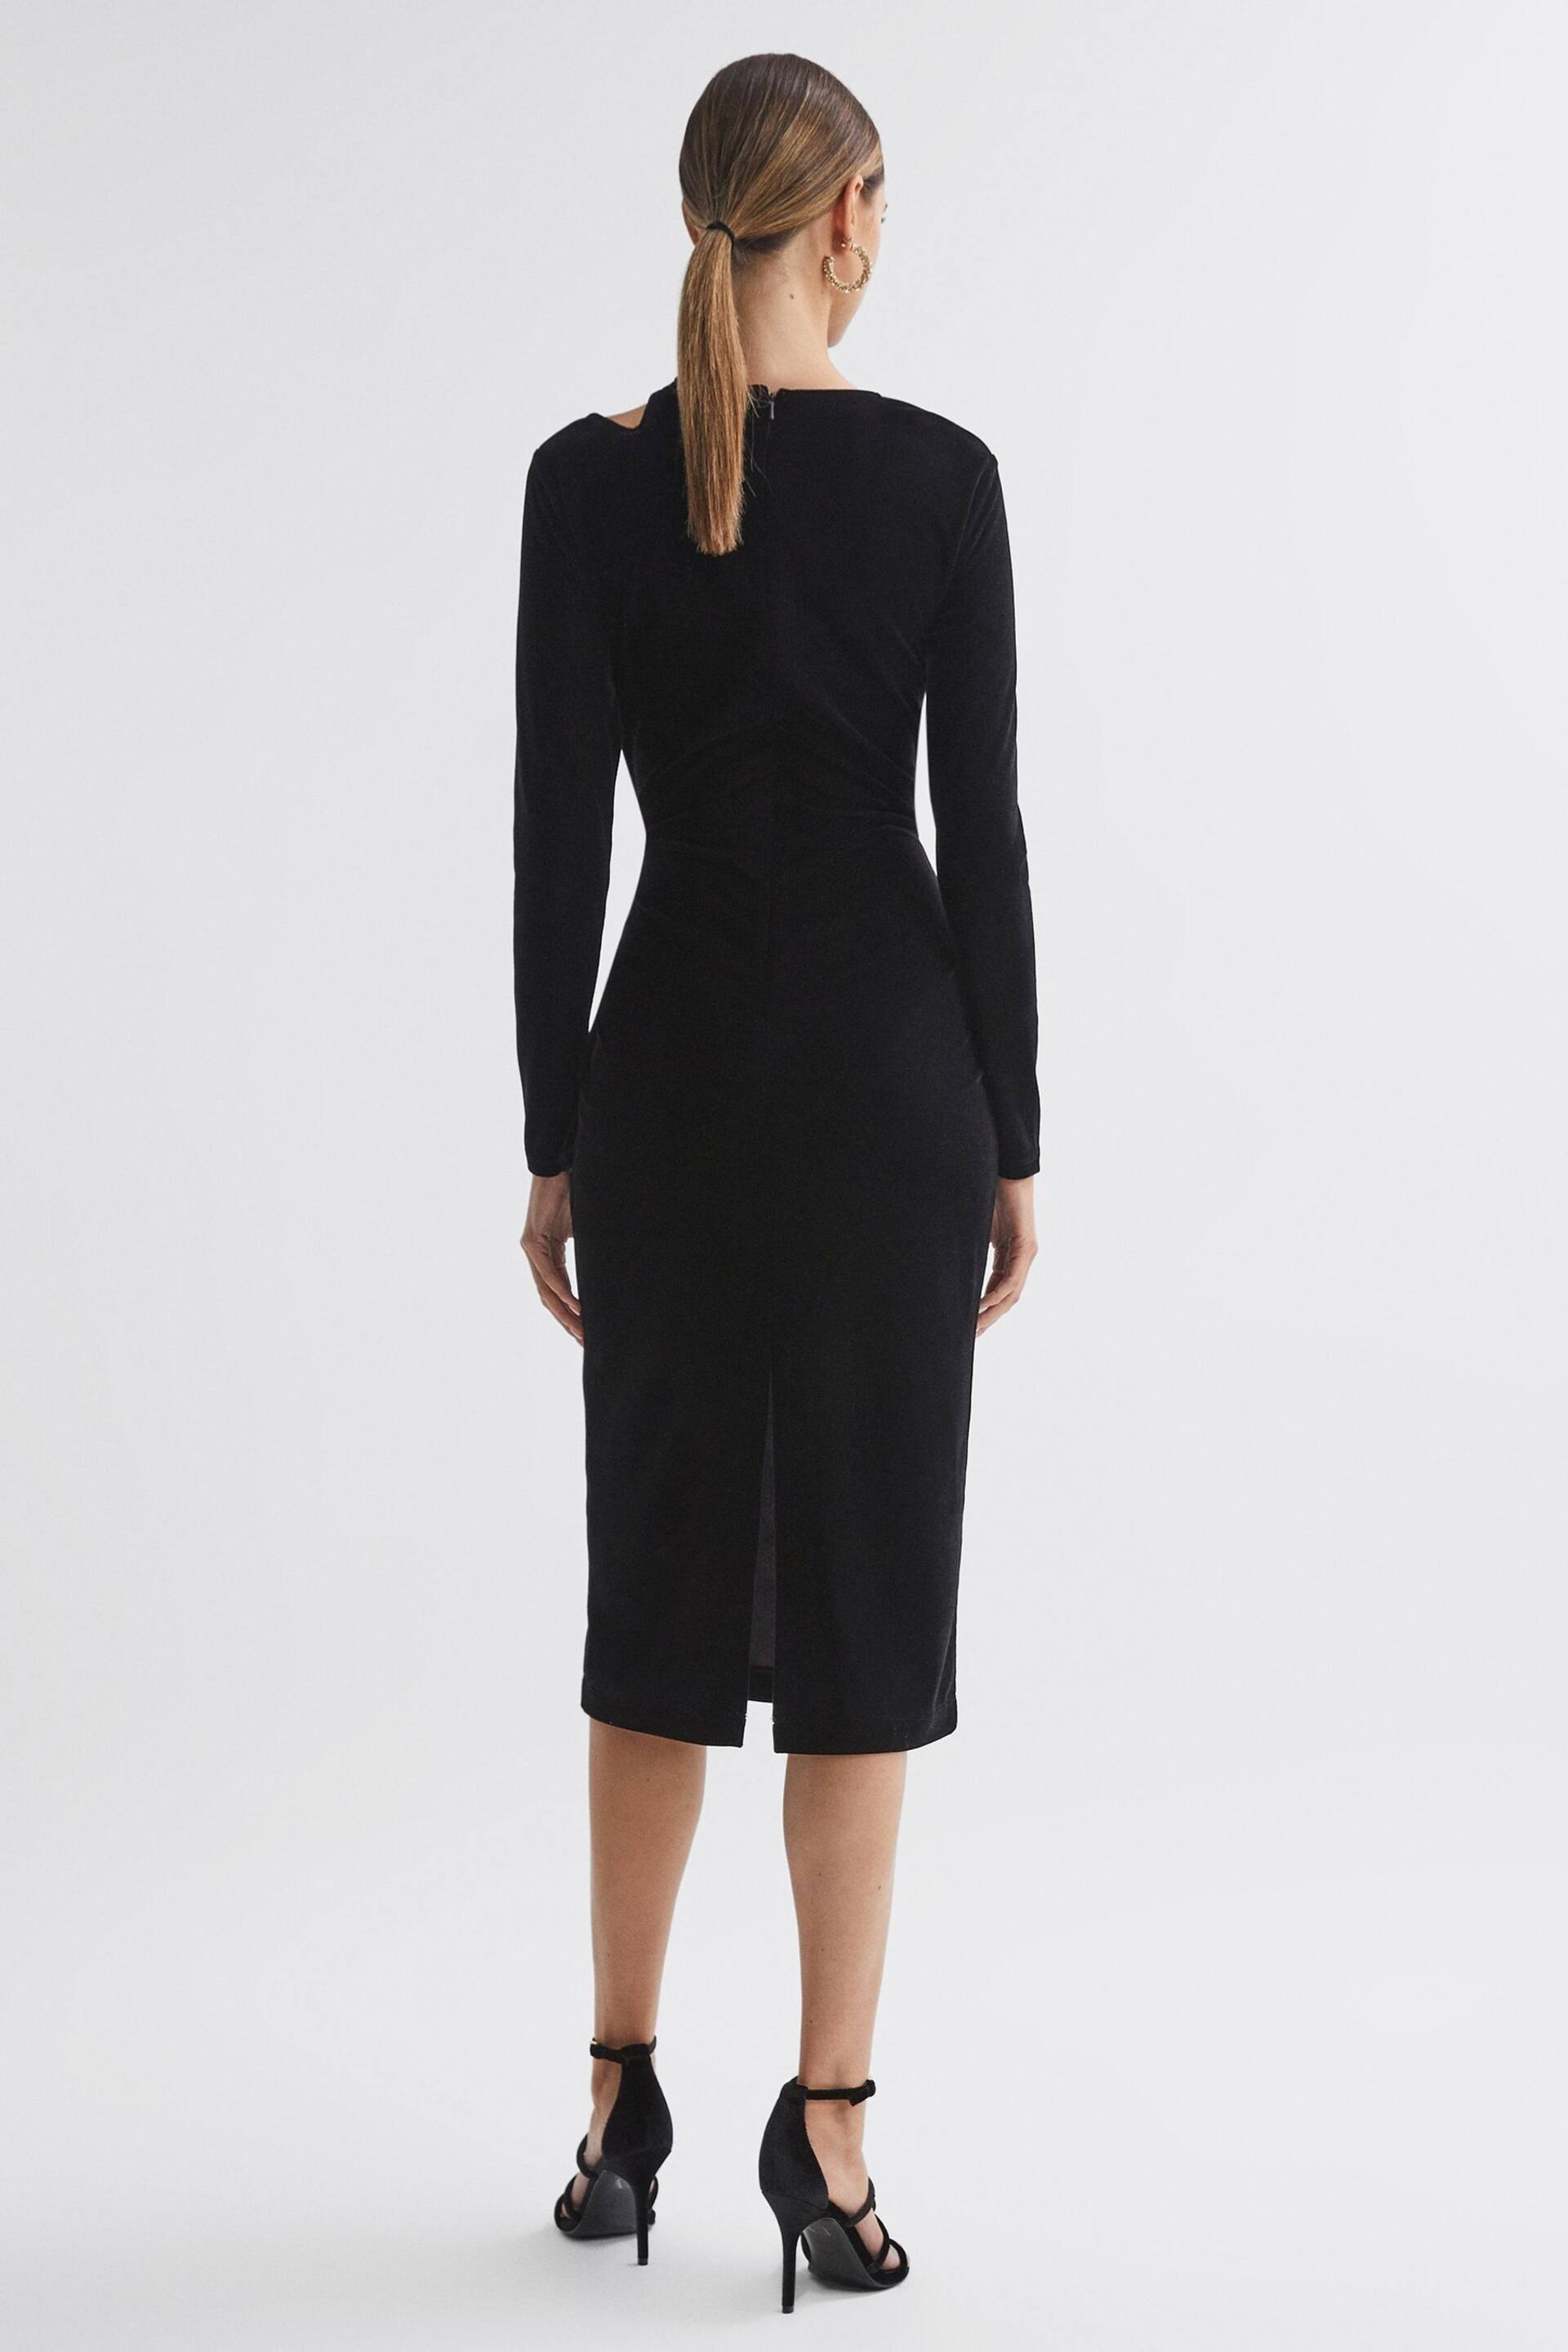 Reiss Black Macey Velvet Cut-Out Midi Dress - Image 4 of 4